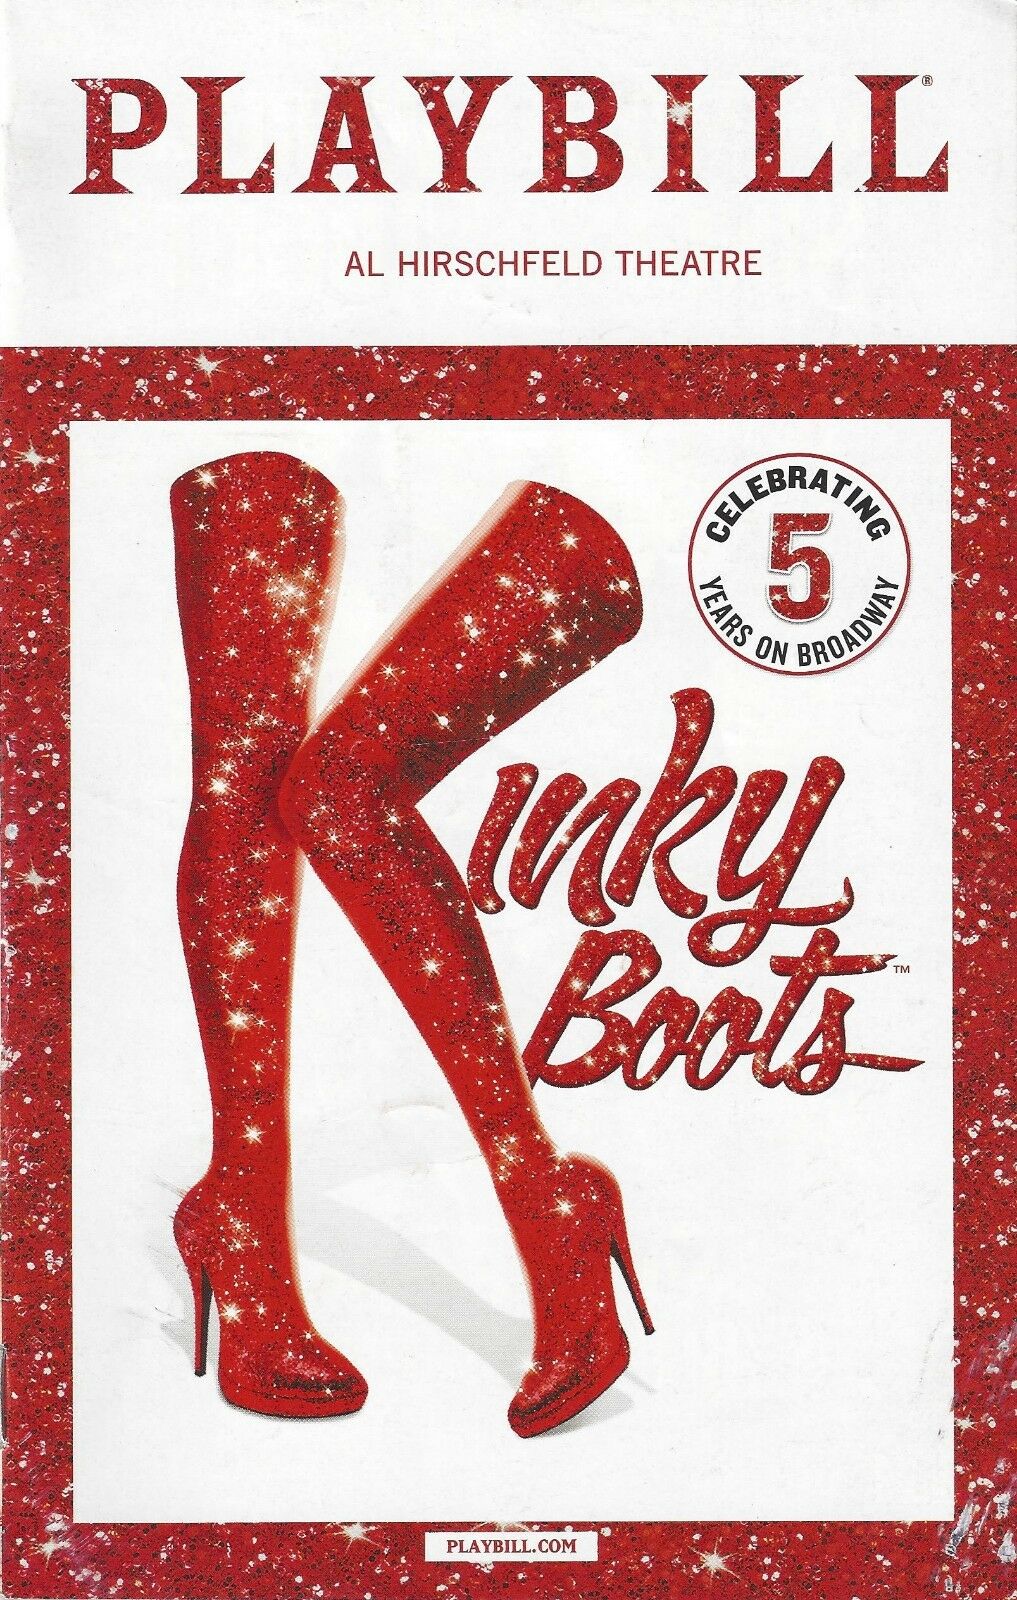 Wayne Brady "kinky Boots" Cyndi Lauper / Celebrating Five Years 2018 Playbill